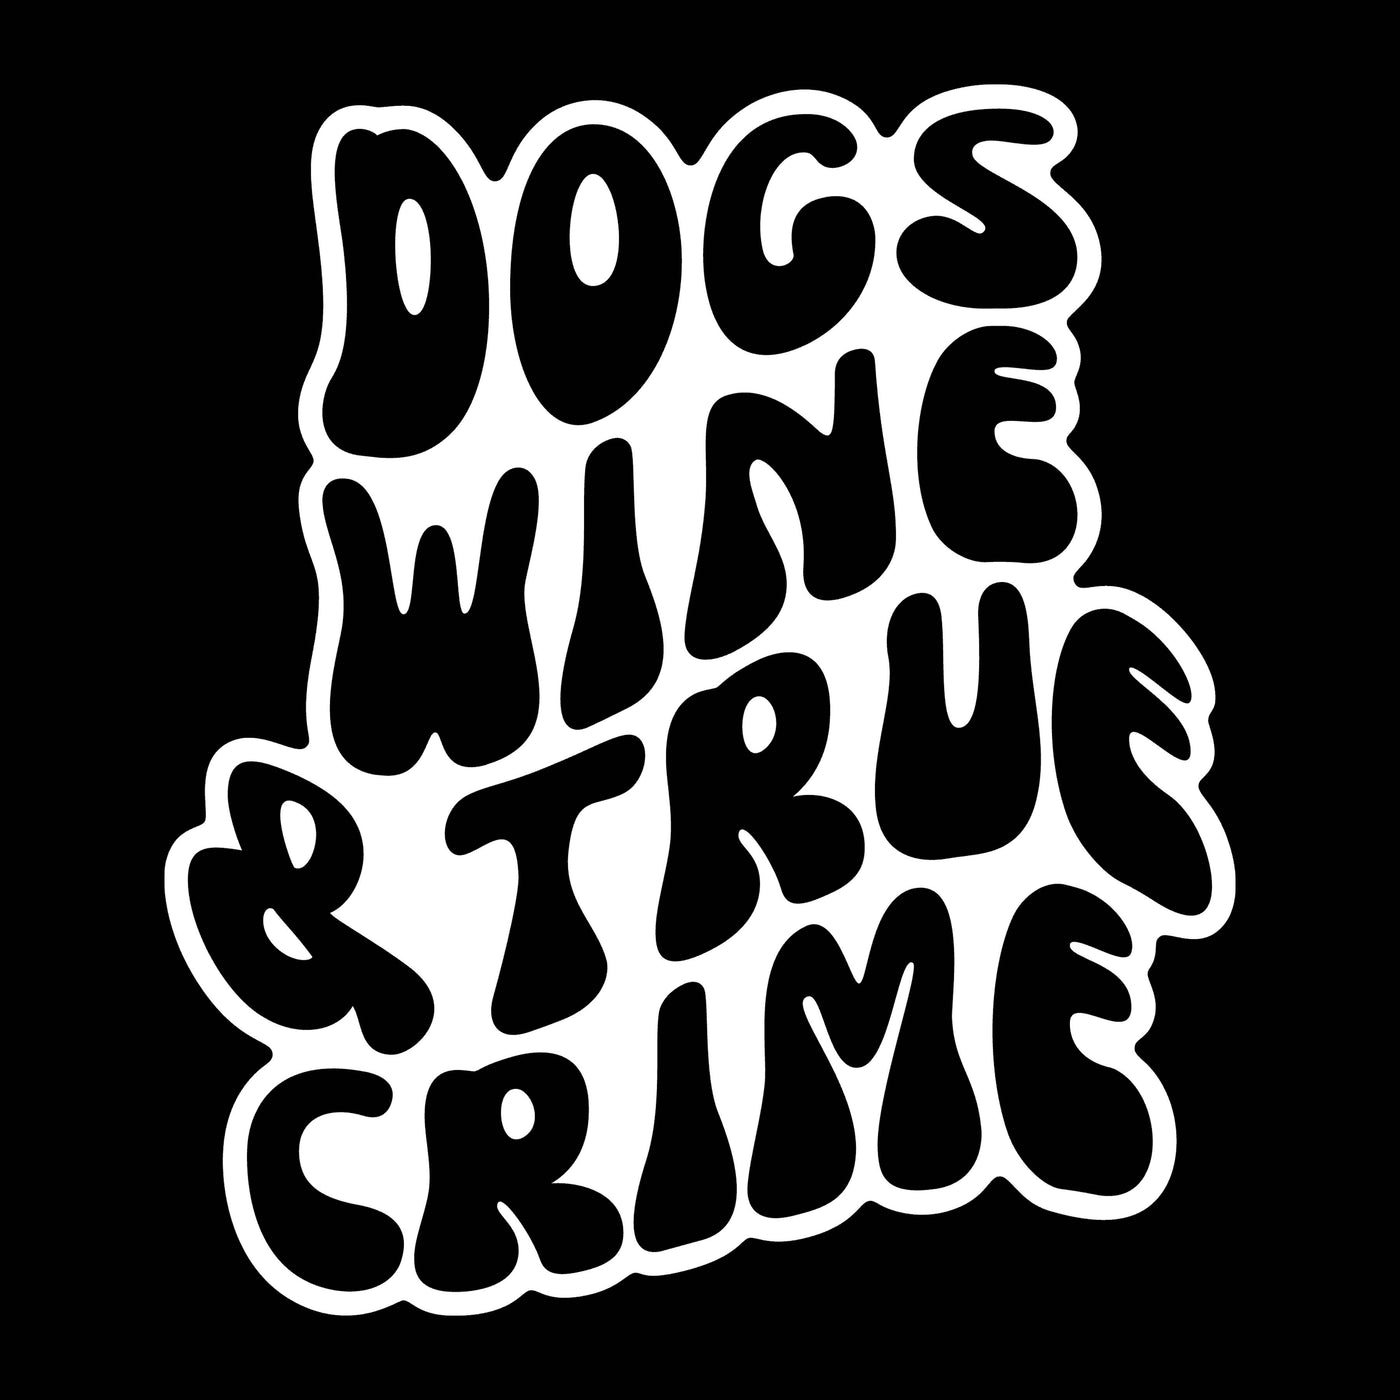 Dogs Wine True Crime Sticker